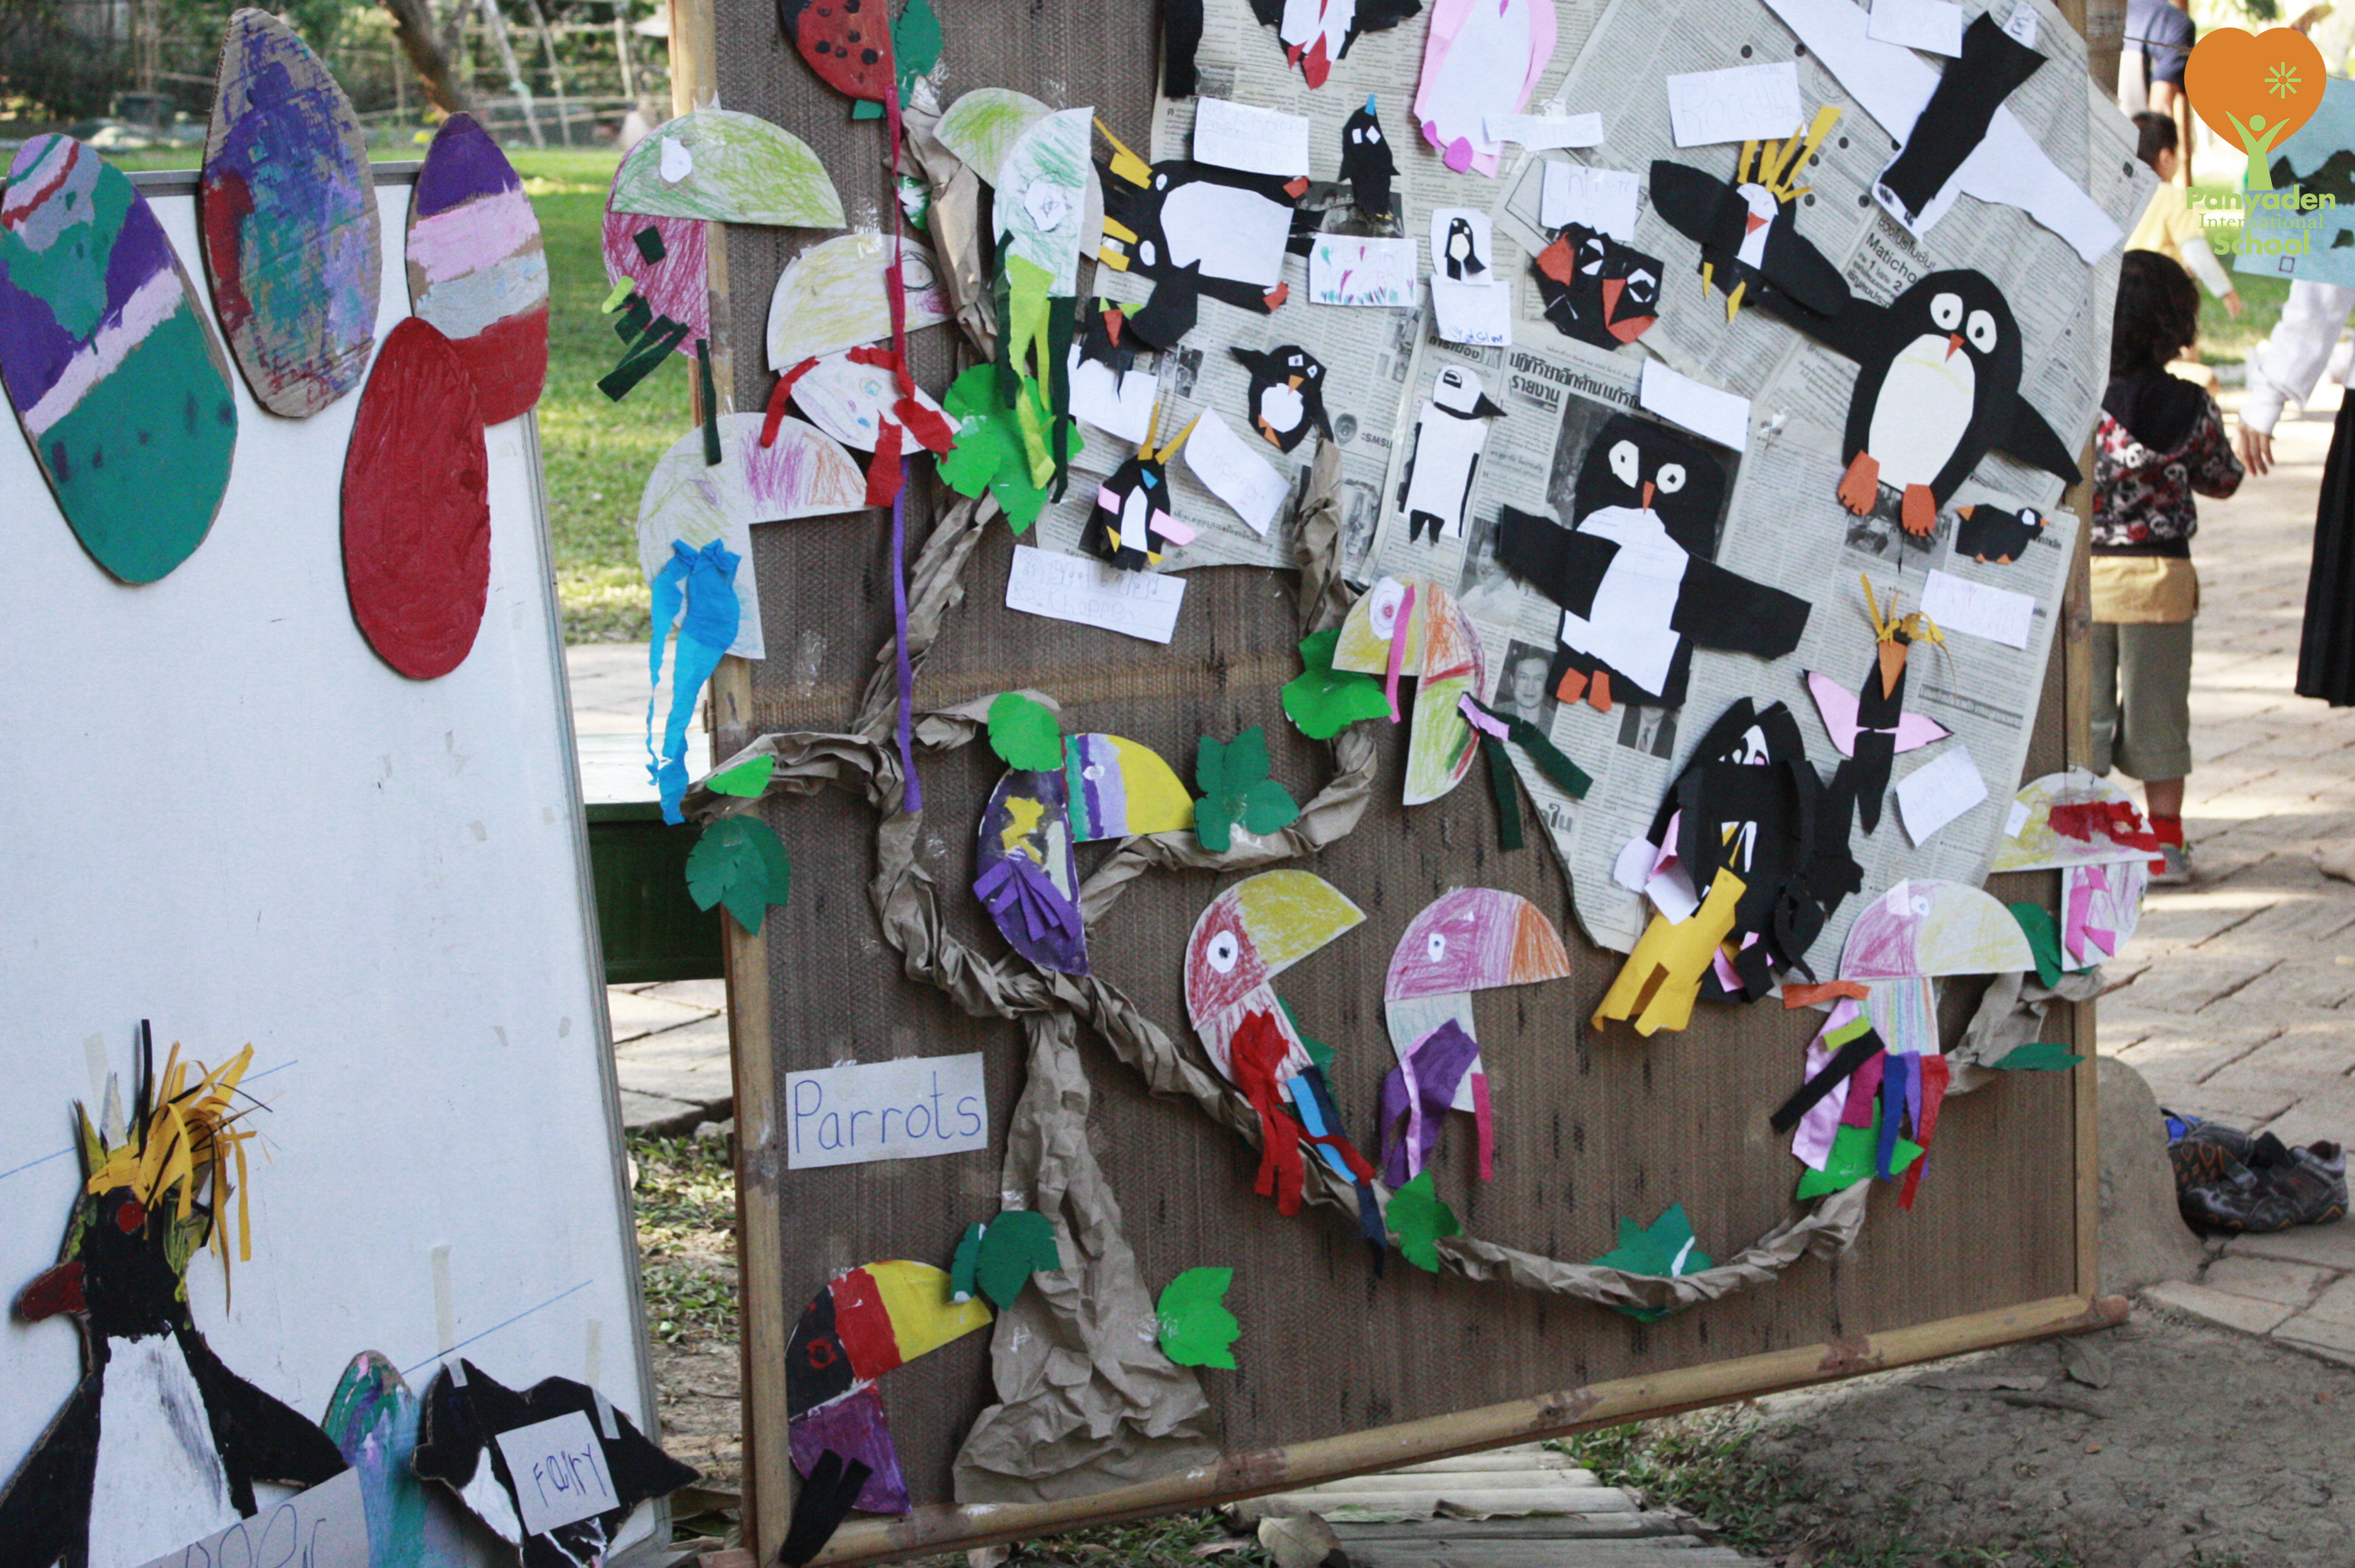 Penguin and birds paper art by Panyaden International School pre-schoolers